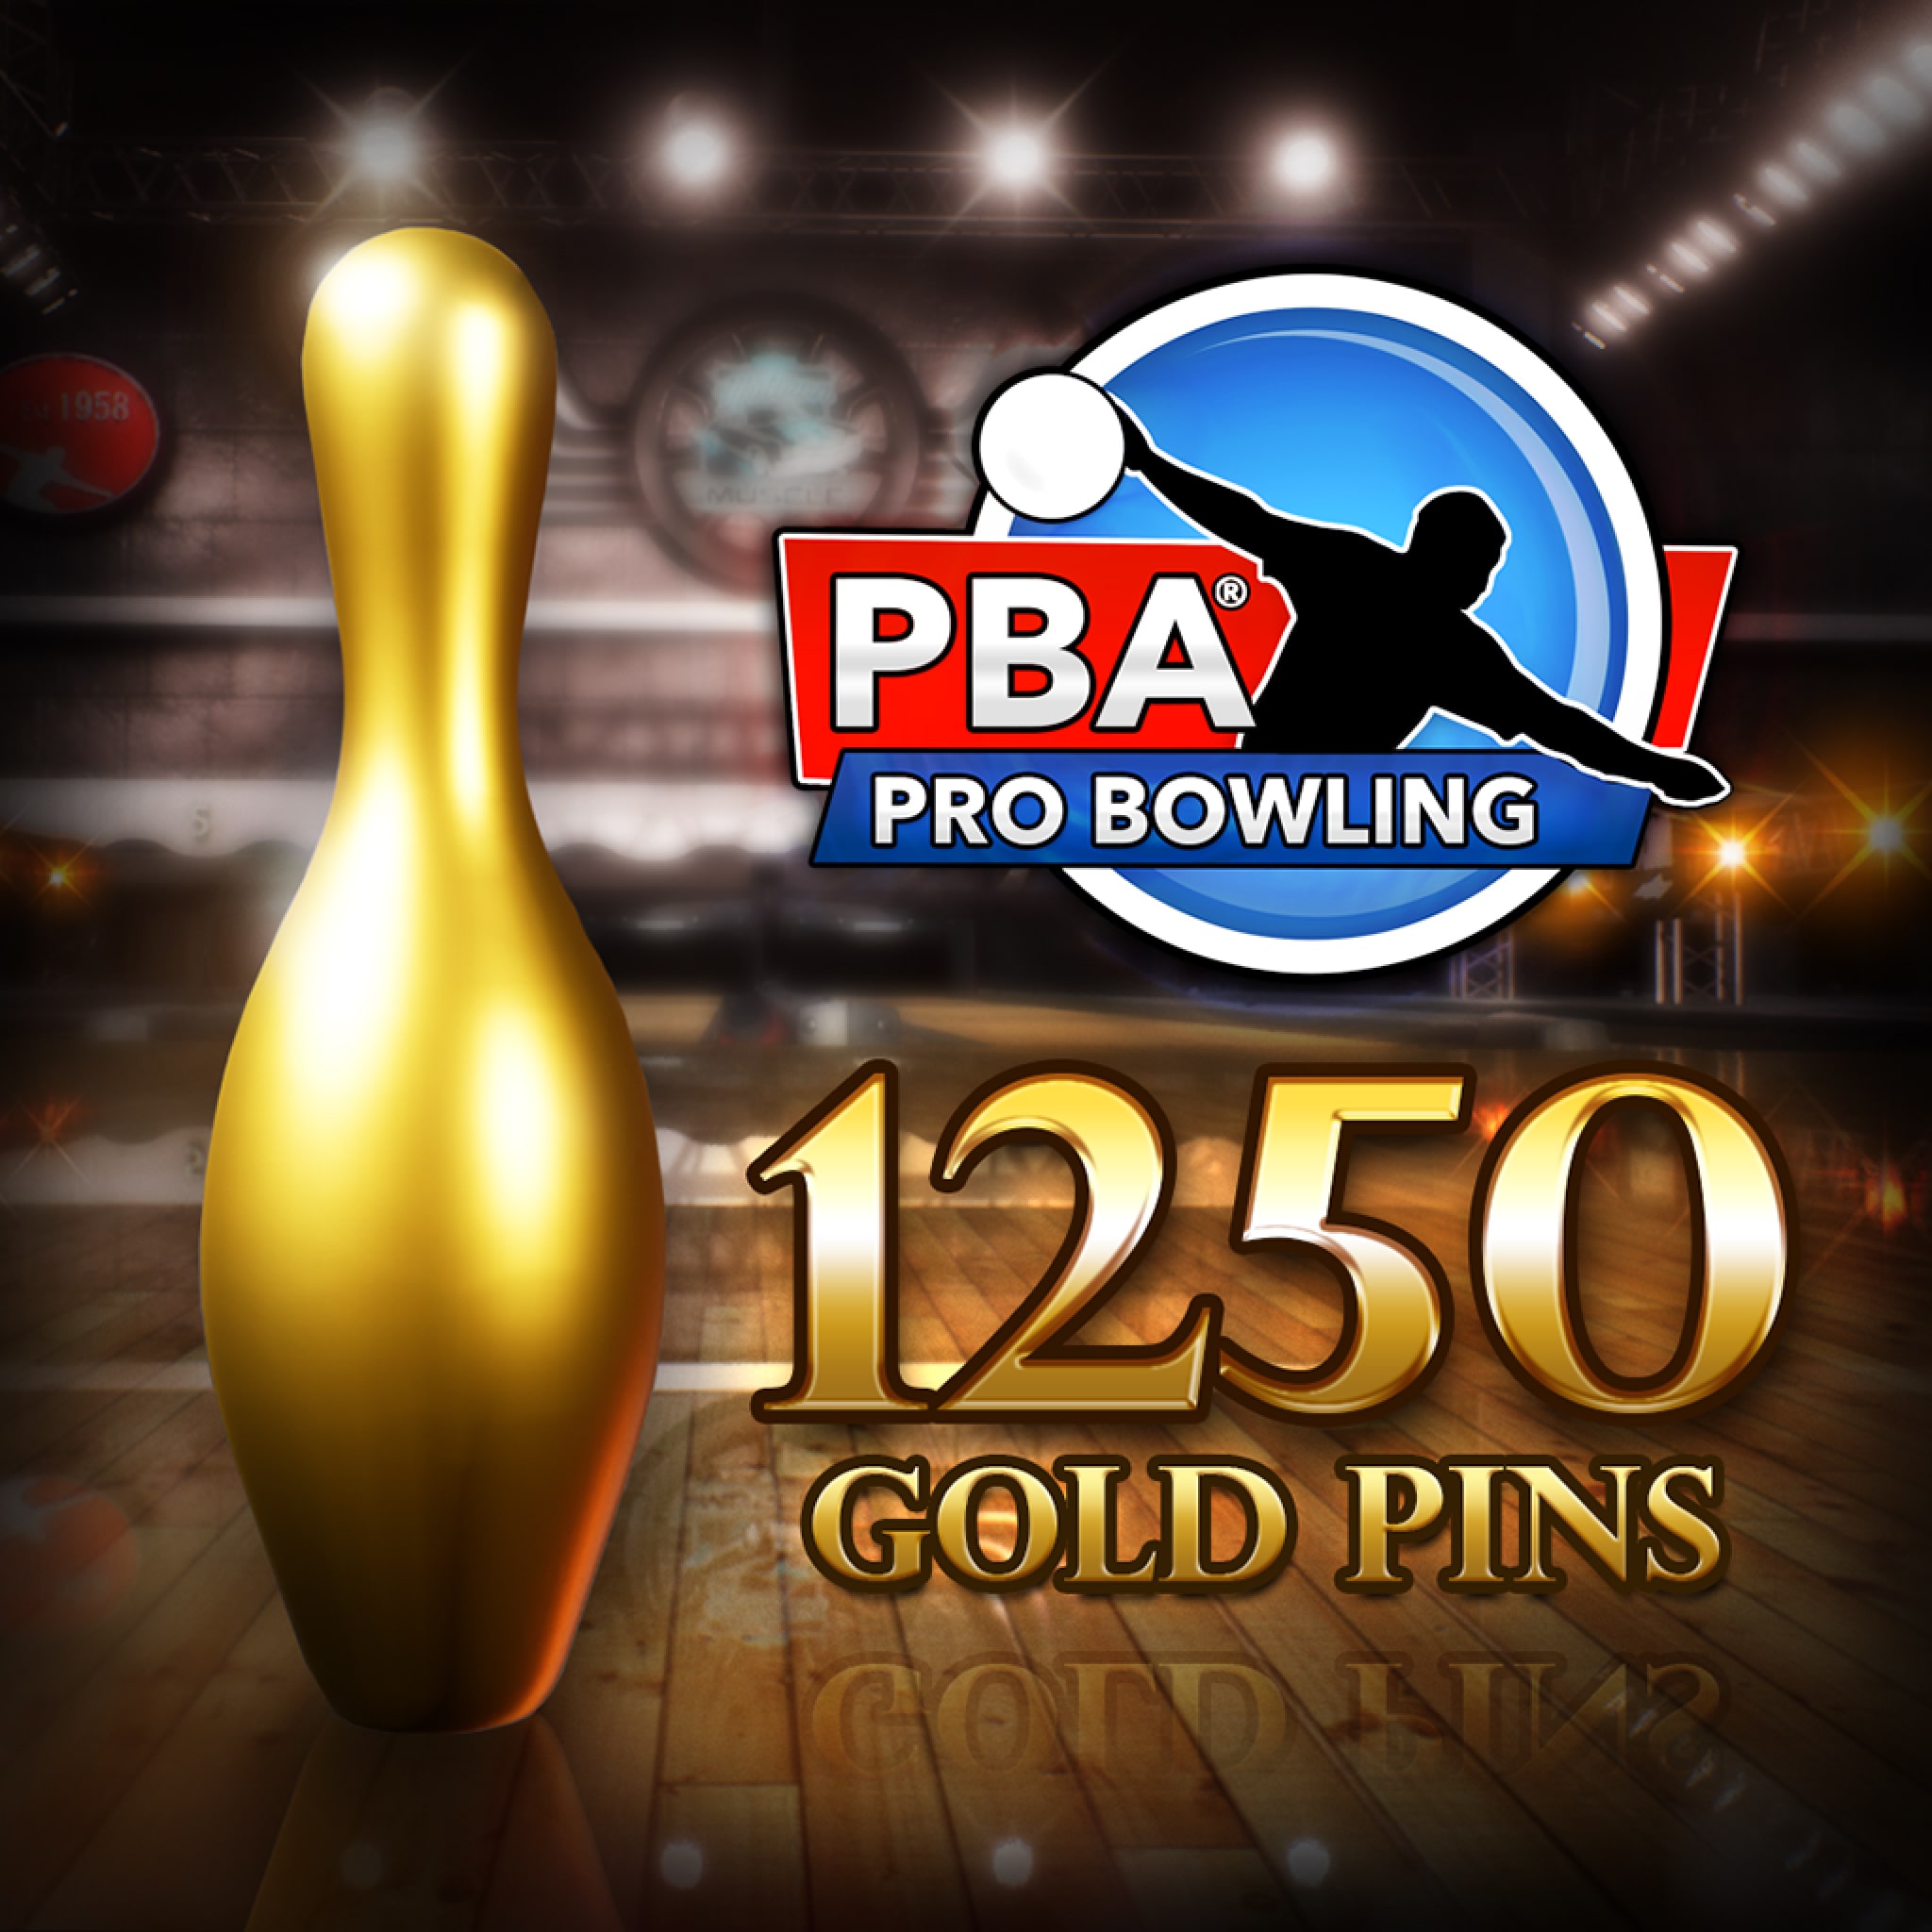 PBA Pro Bowling: 1,250 Gold Pins